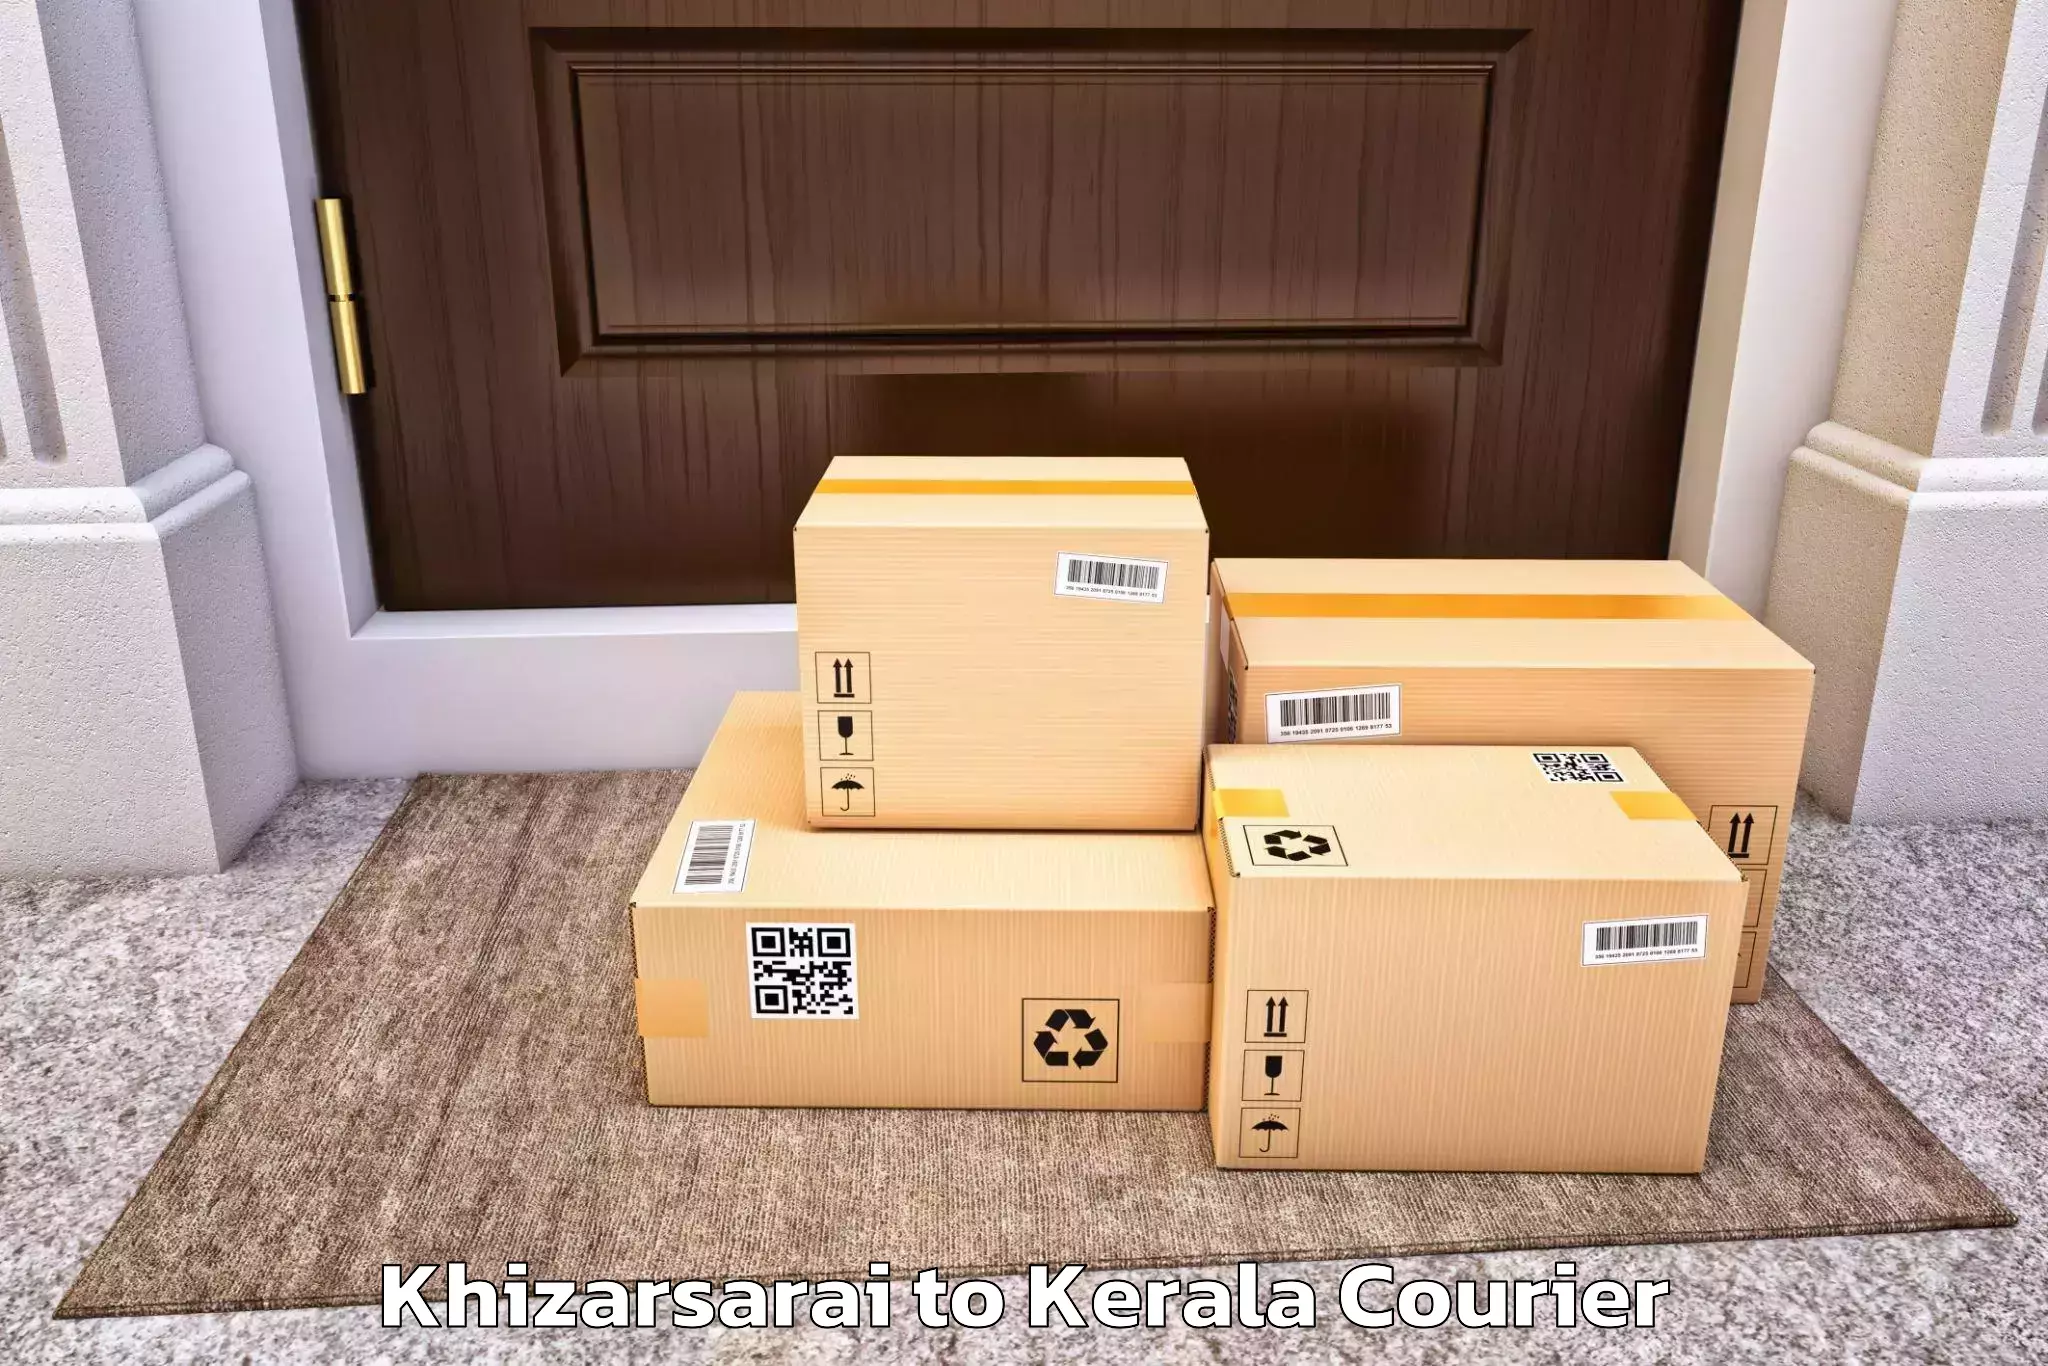 Trusted household movers Khizarsarai to Pangodu